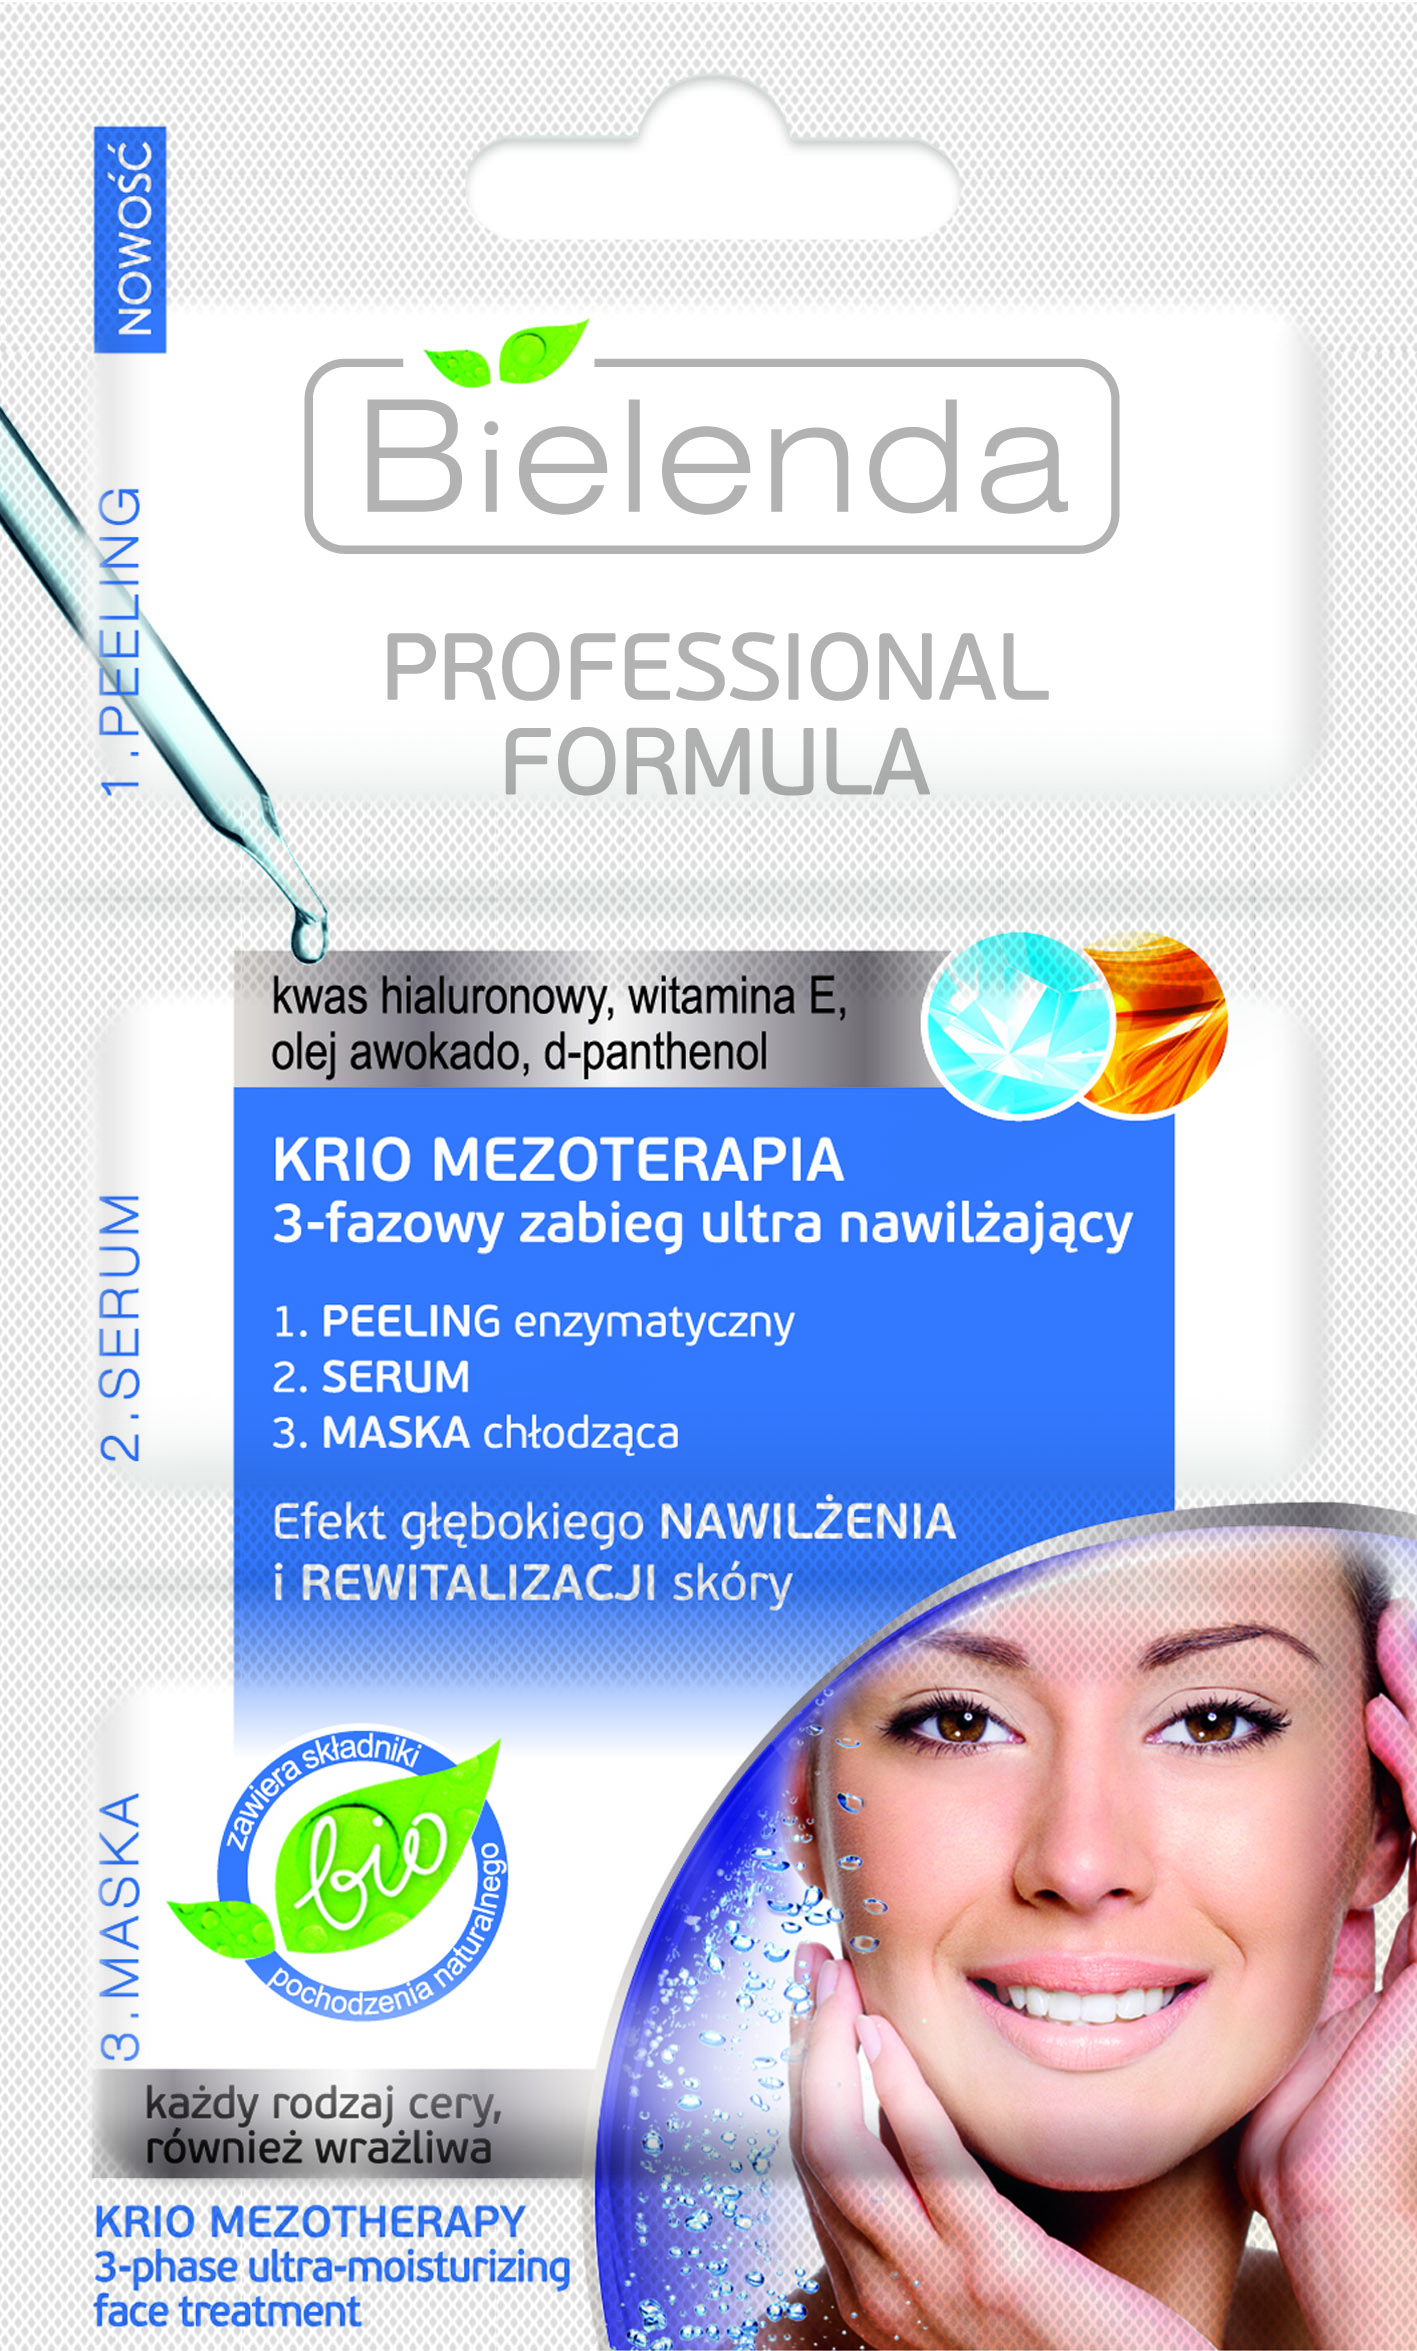 Professional Formula Krio Mezoterapia 3-fazowy zabieg ultra nawilÂ¿ajÂ±cy 3x3g